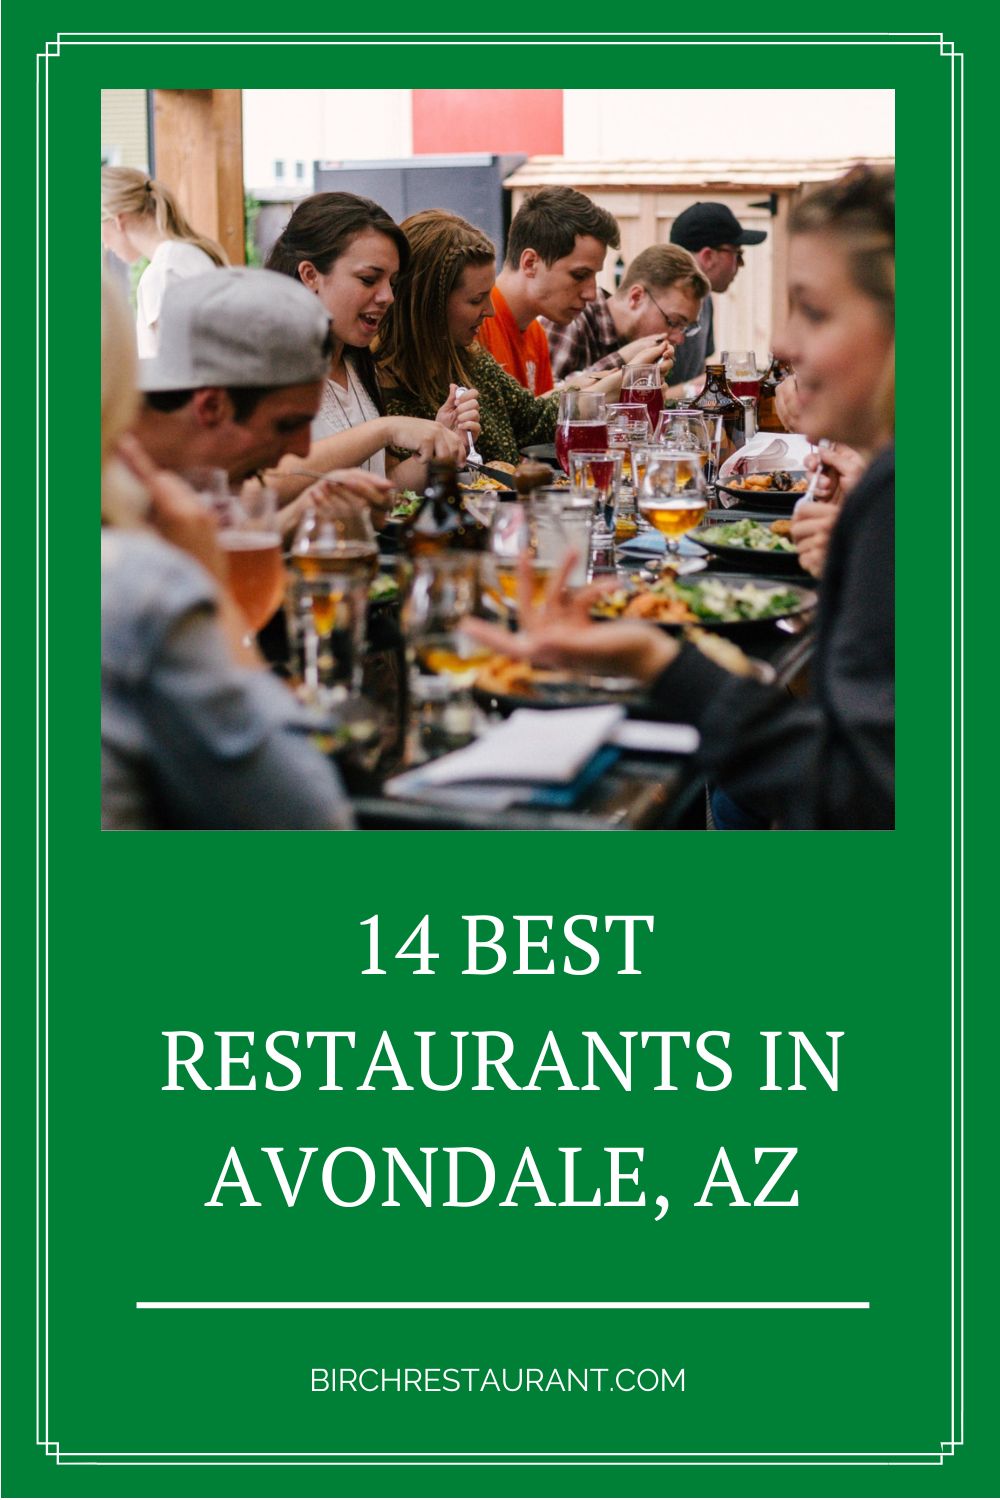 Best Restaurants in Avondale